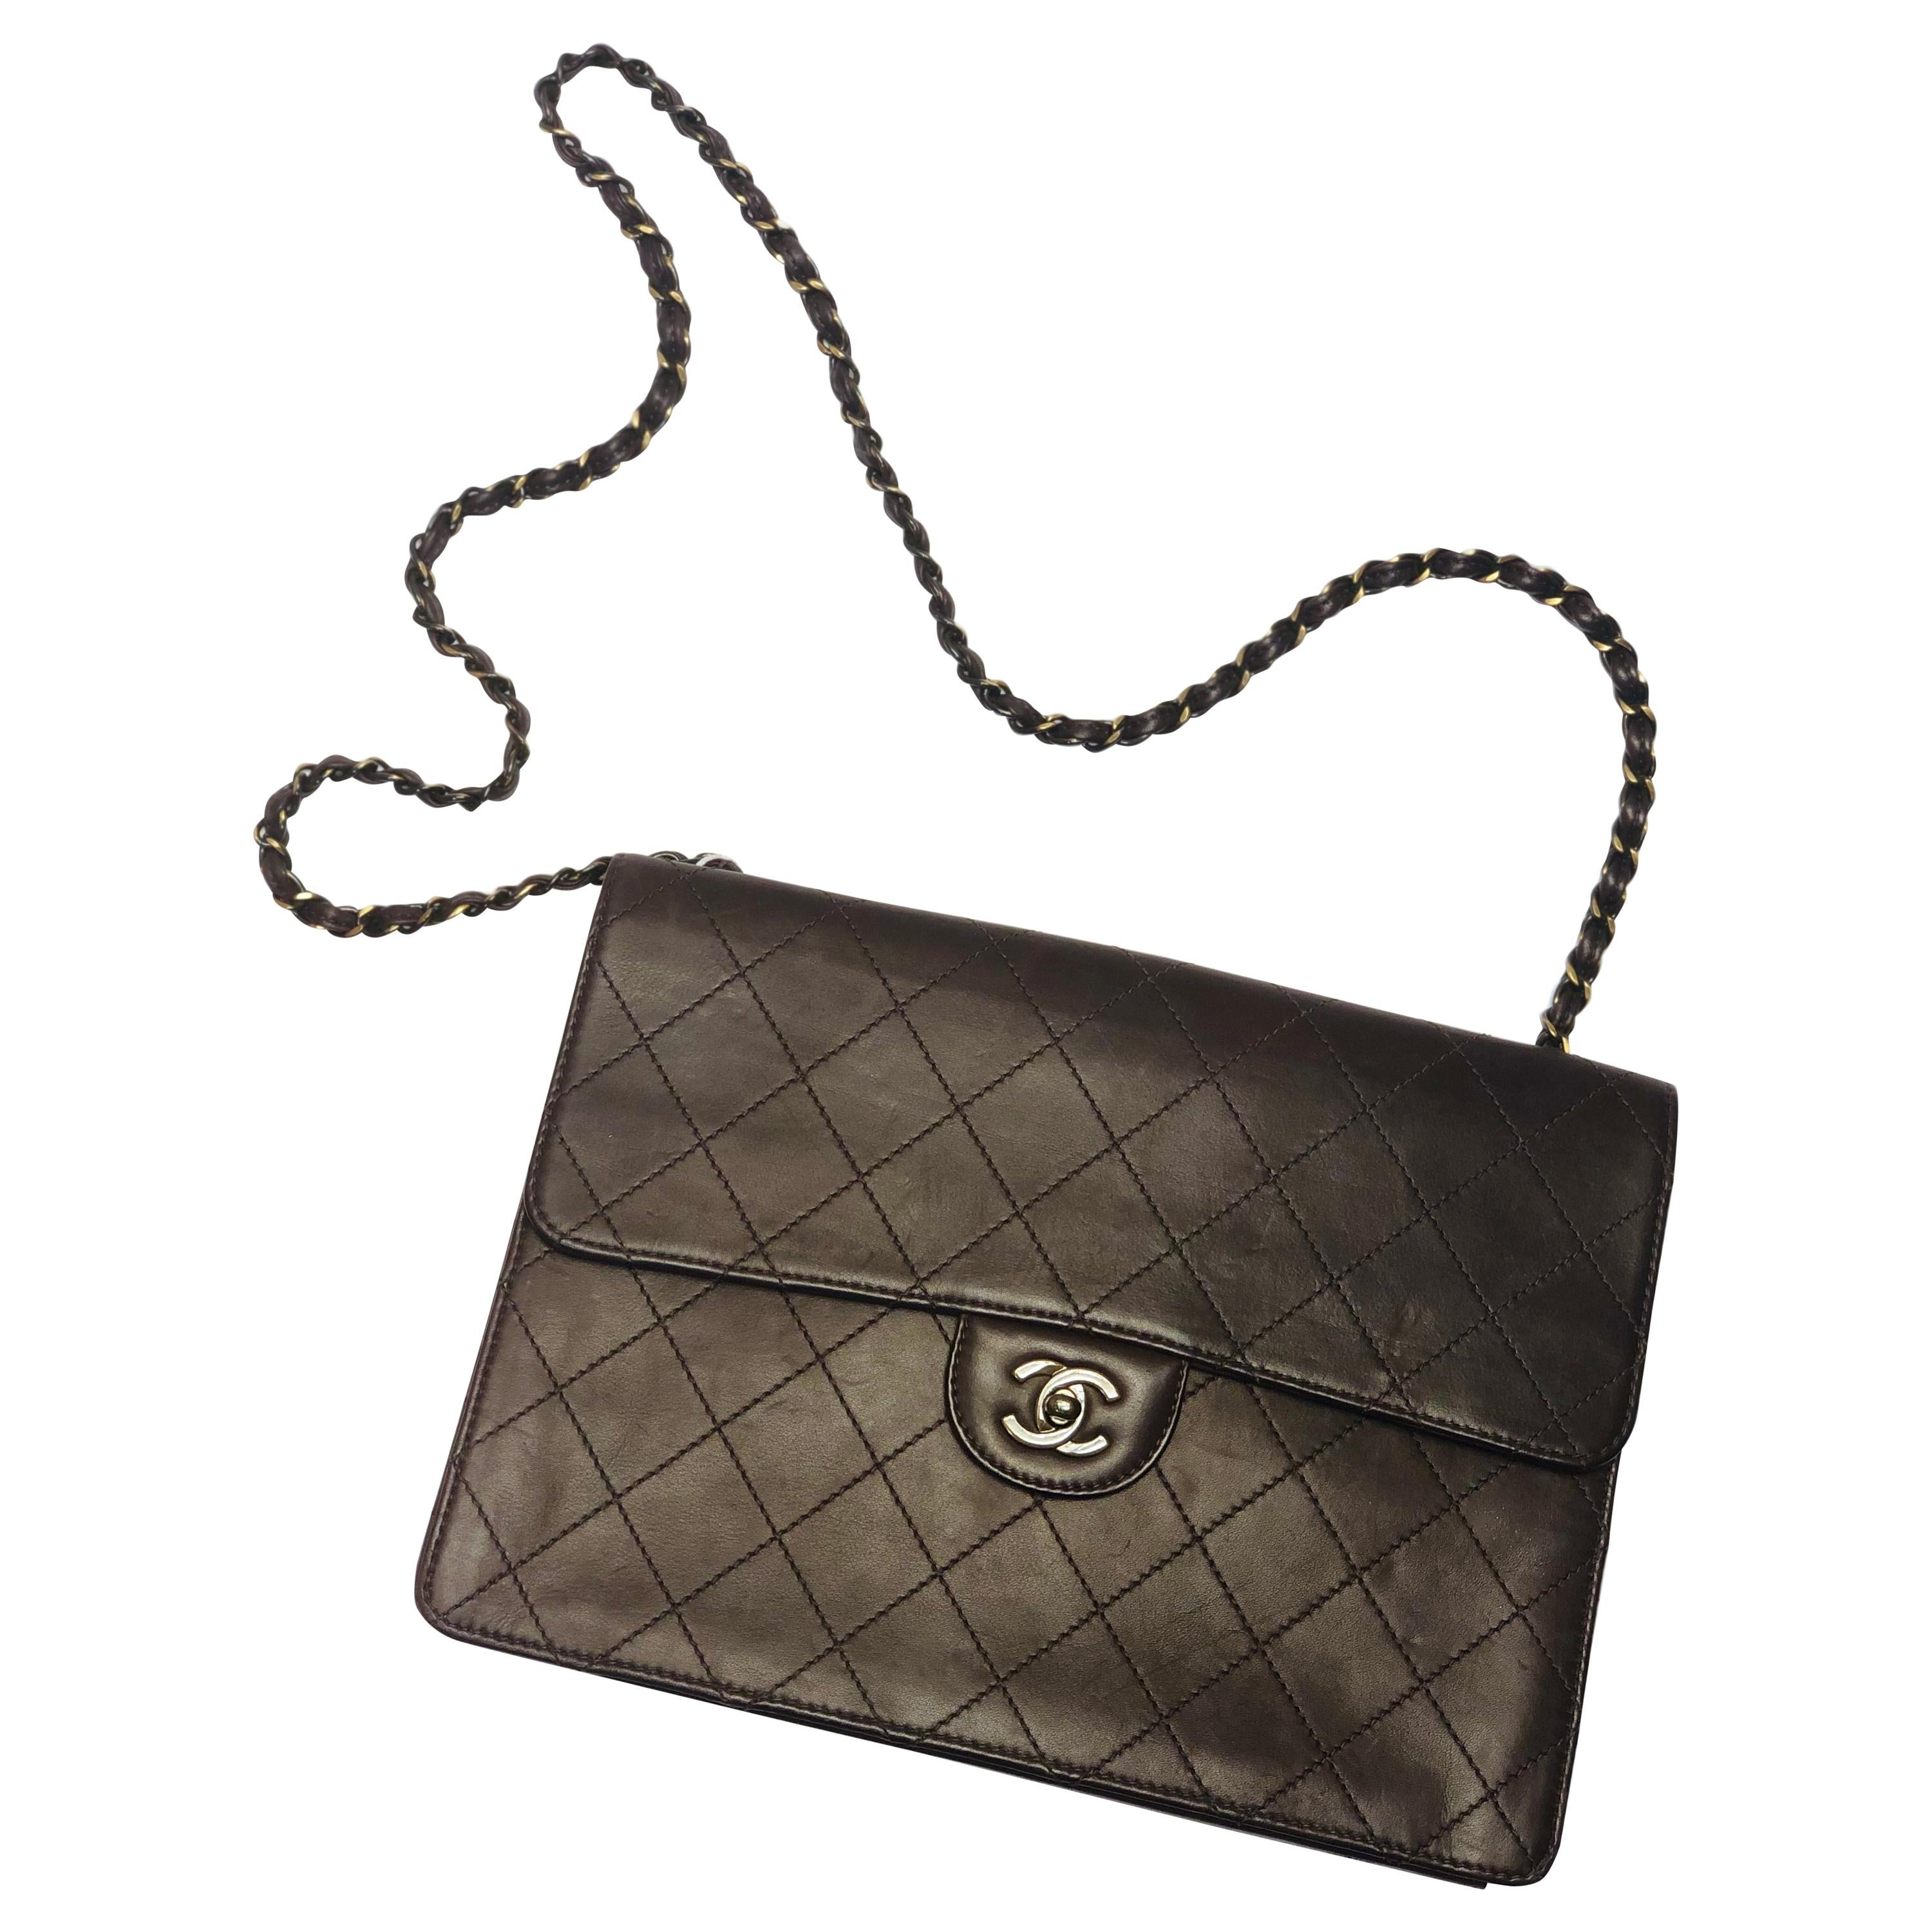  Chanel Medium Classic Flap Shoulder Bag